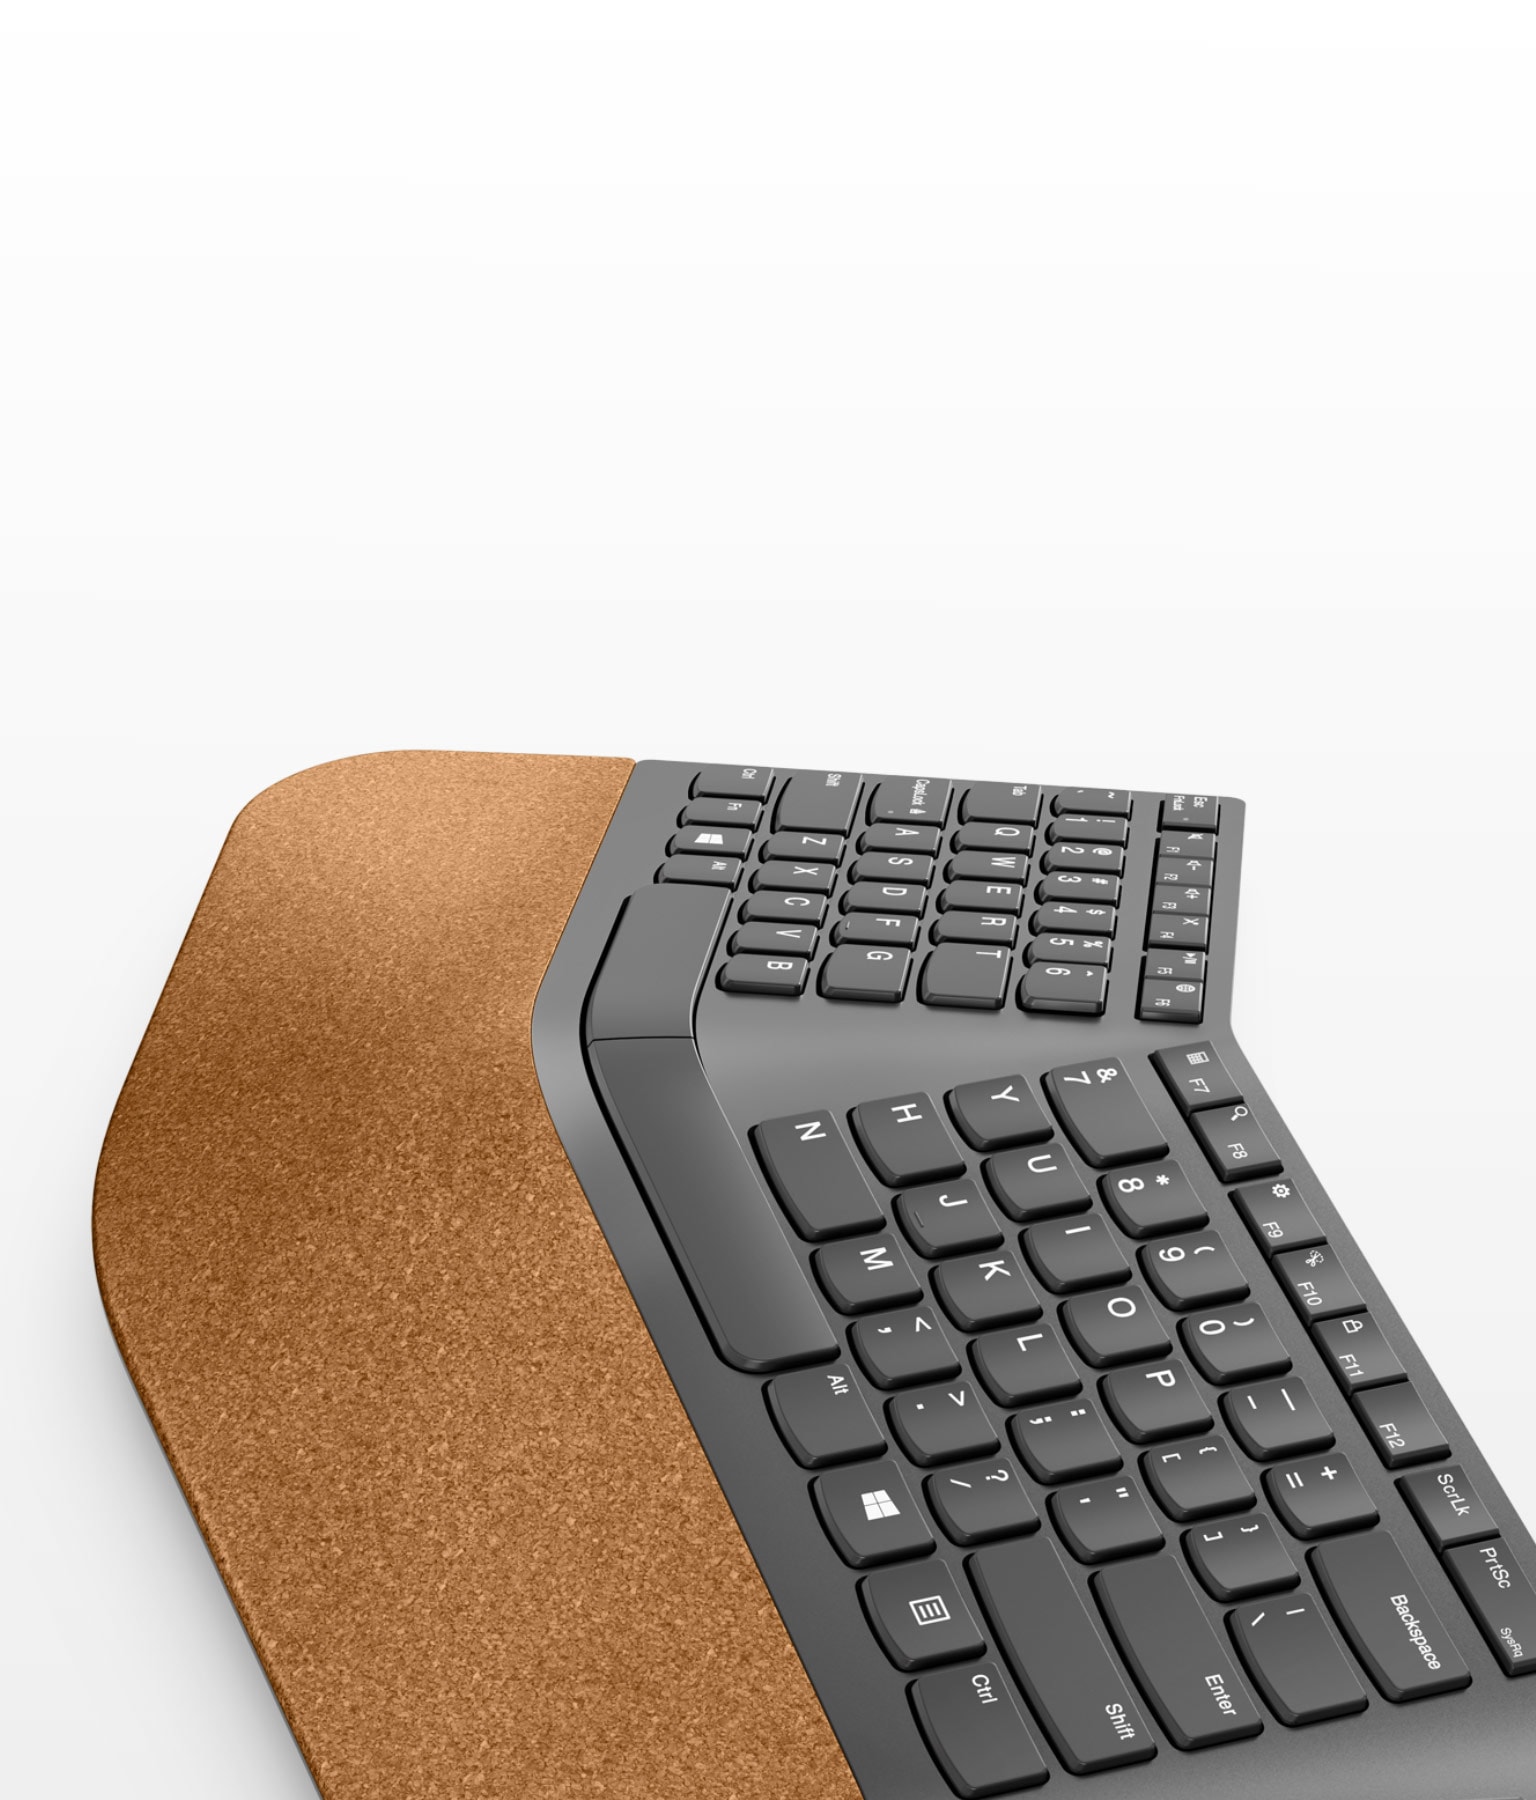 Lenovo Go Wireless Split Tastatura